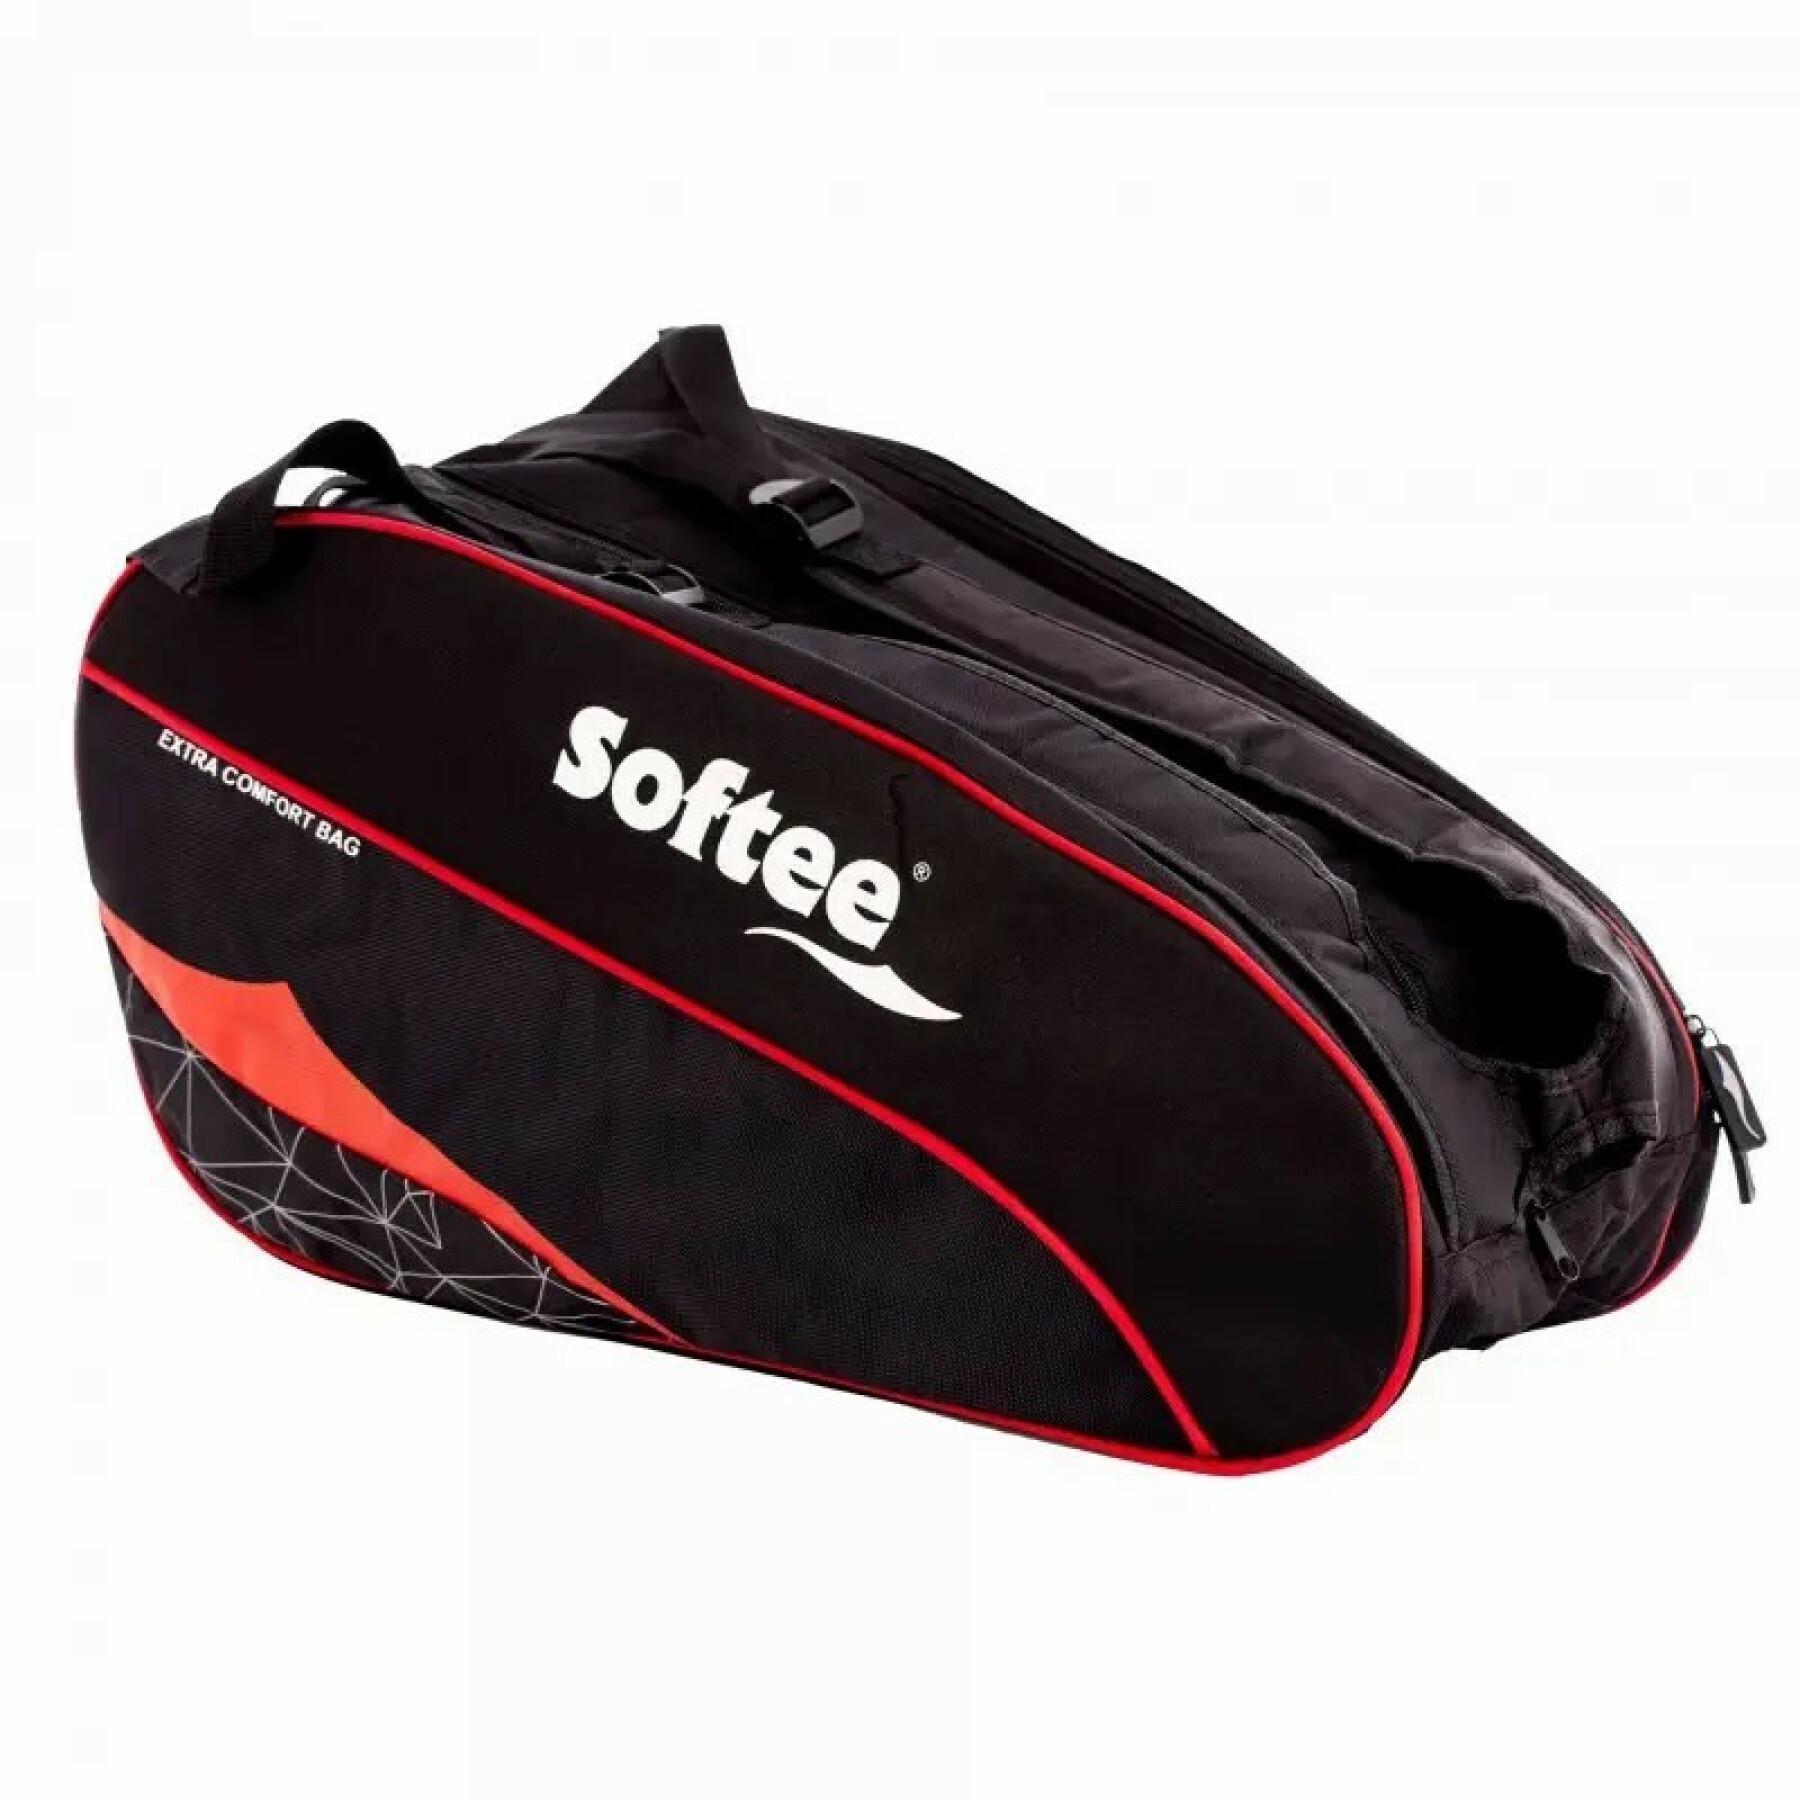 Padel racket väska Softee Extra Comfort